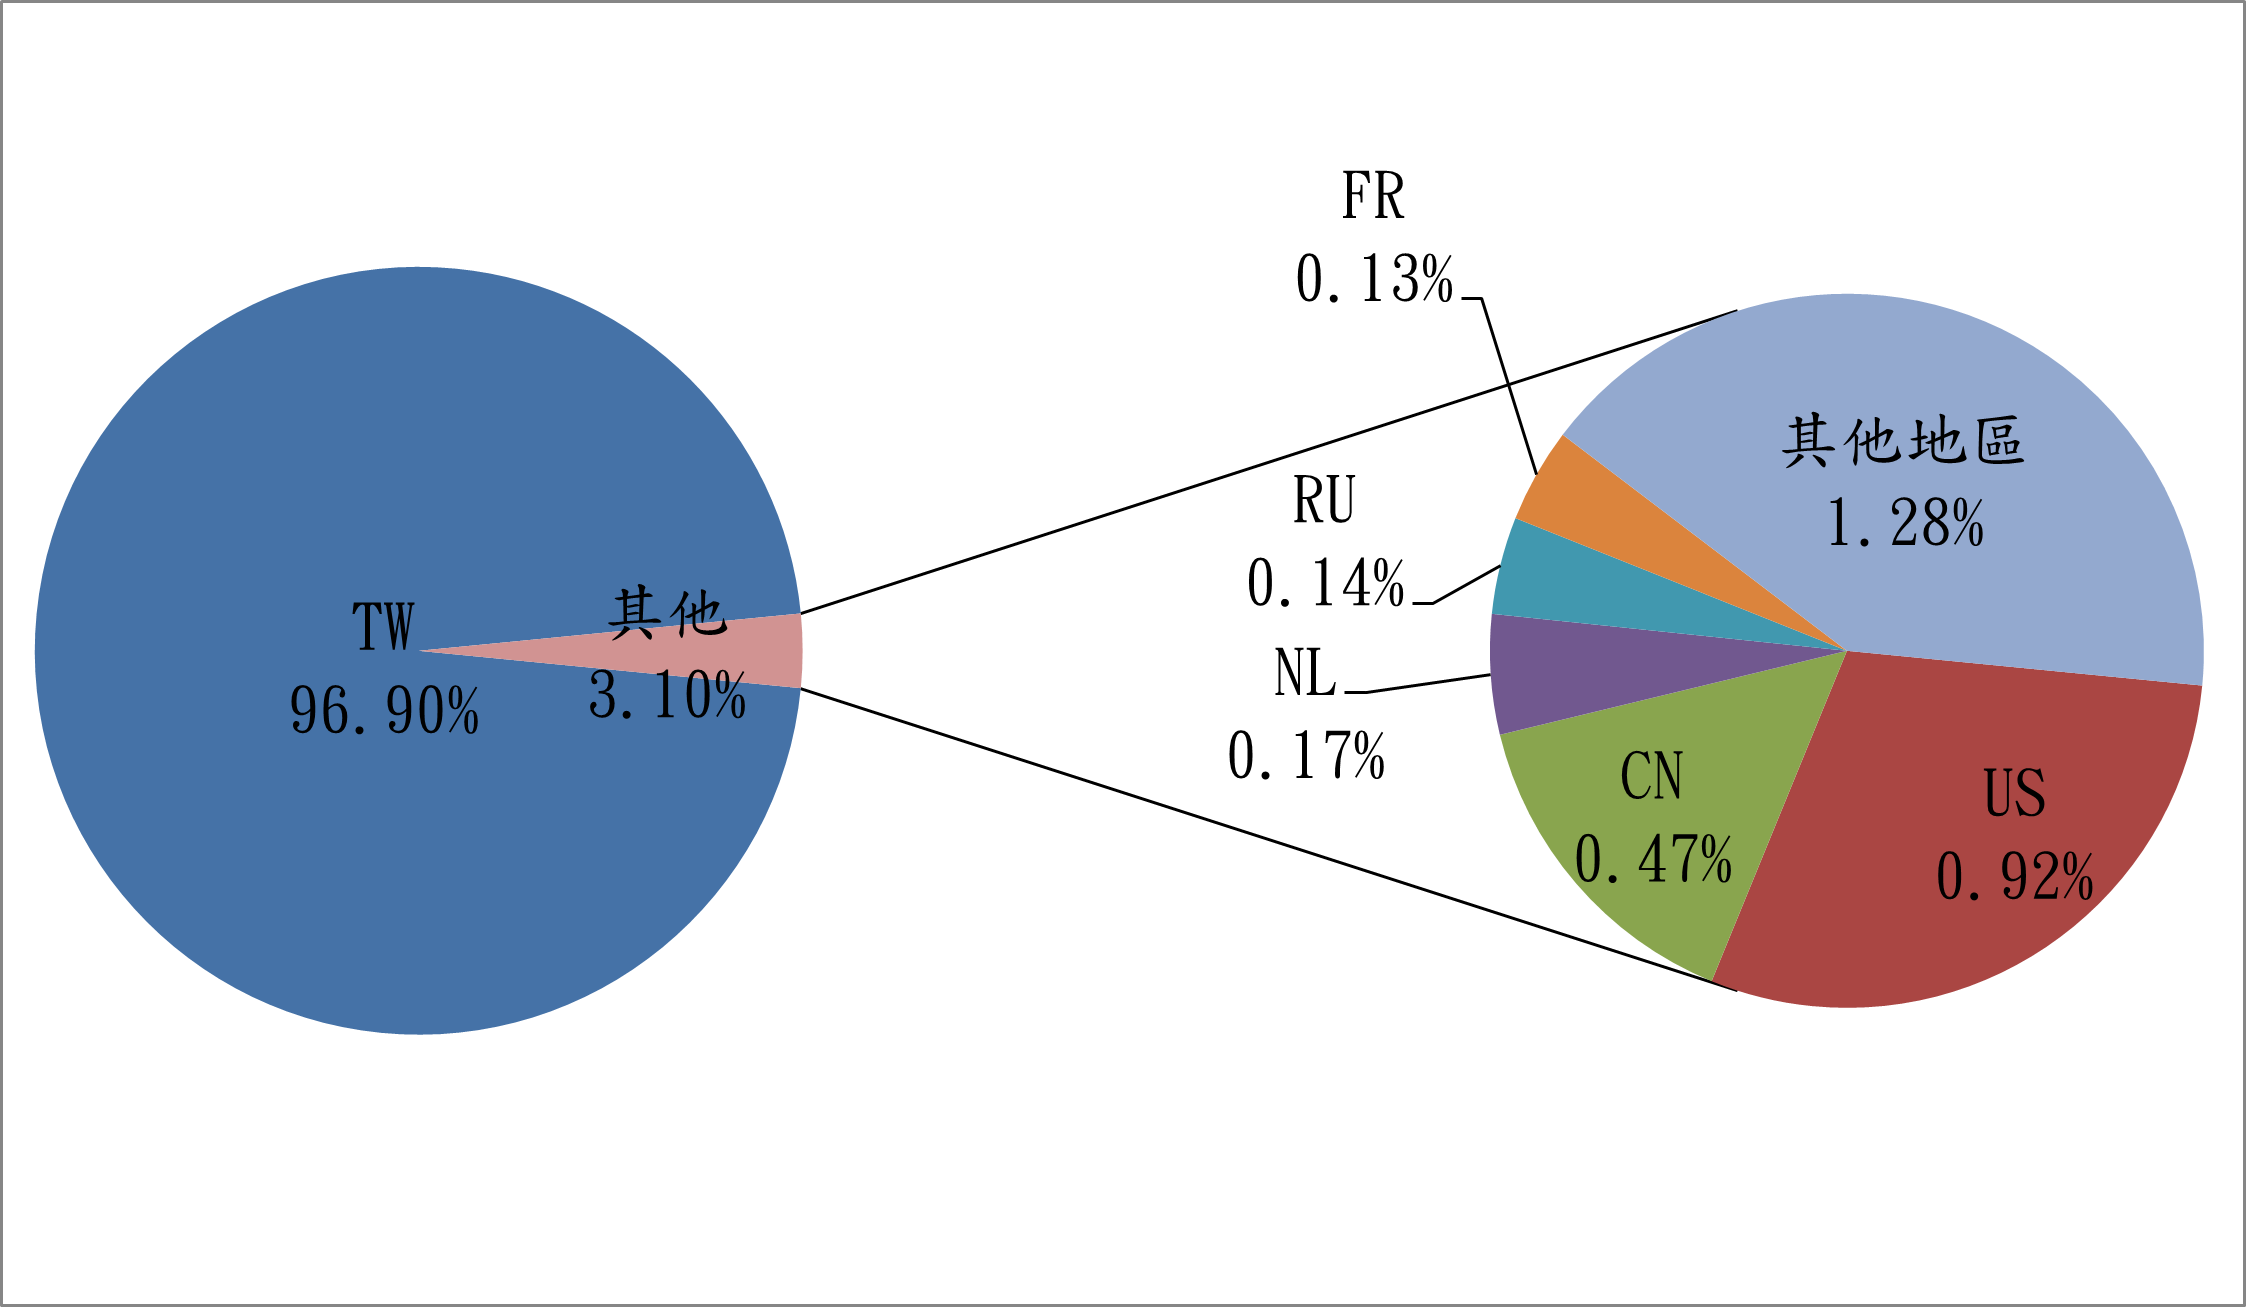 TW96.9% 其他3.1% FR0.13% RU0.14% NL0.17% CN0.47% US0.92% 其他地區1.28%